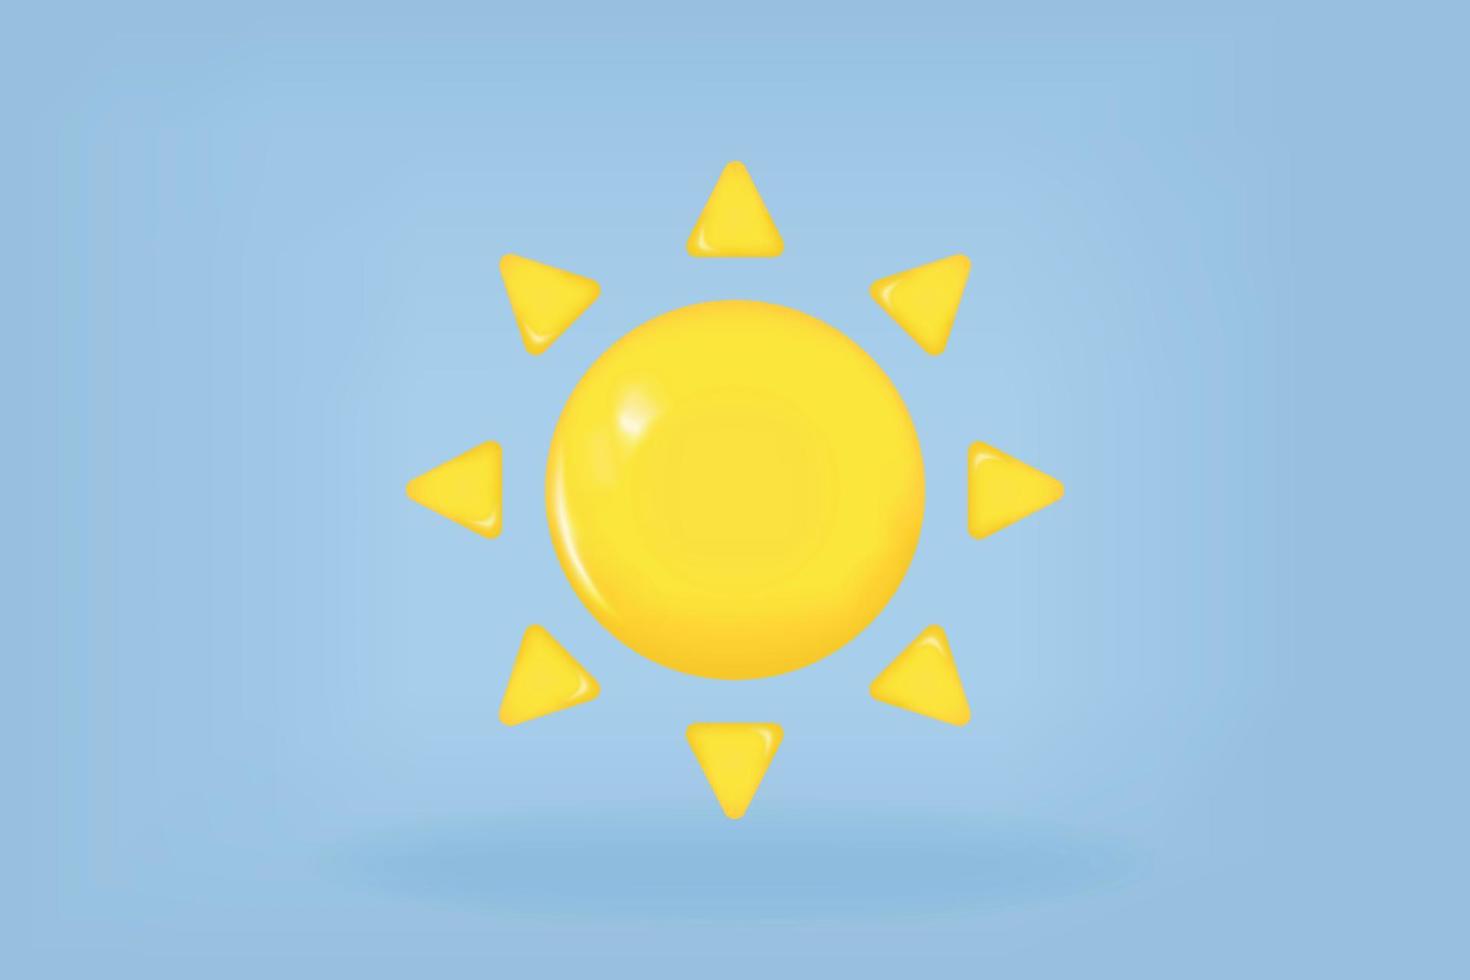 soleil jaune avec rayons, étoile du soleil. icône de vecteur de rendu 3d dans un style minimal de dessin animé. été, météo, concept d'espace.